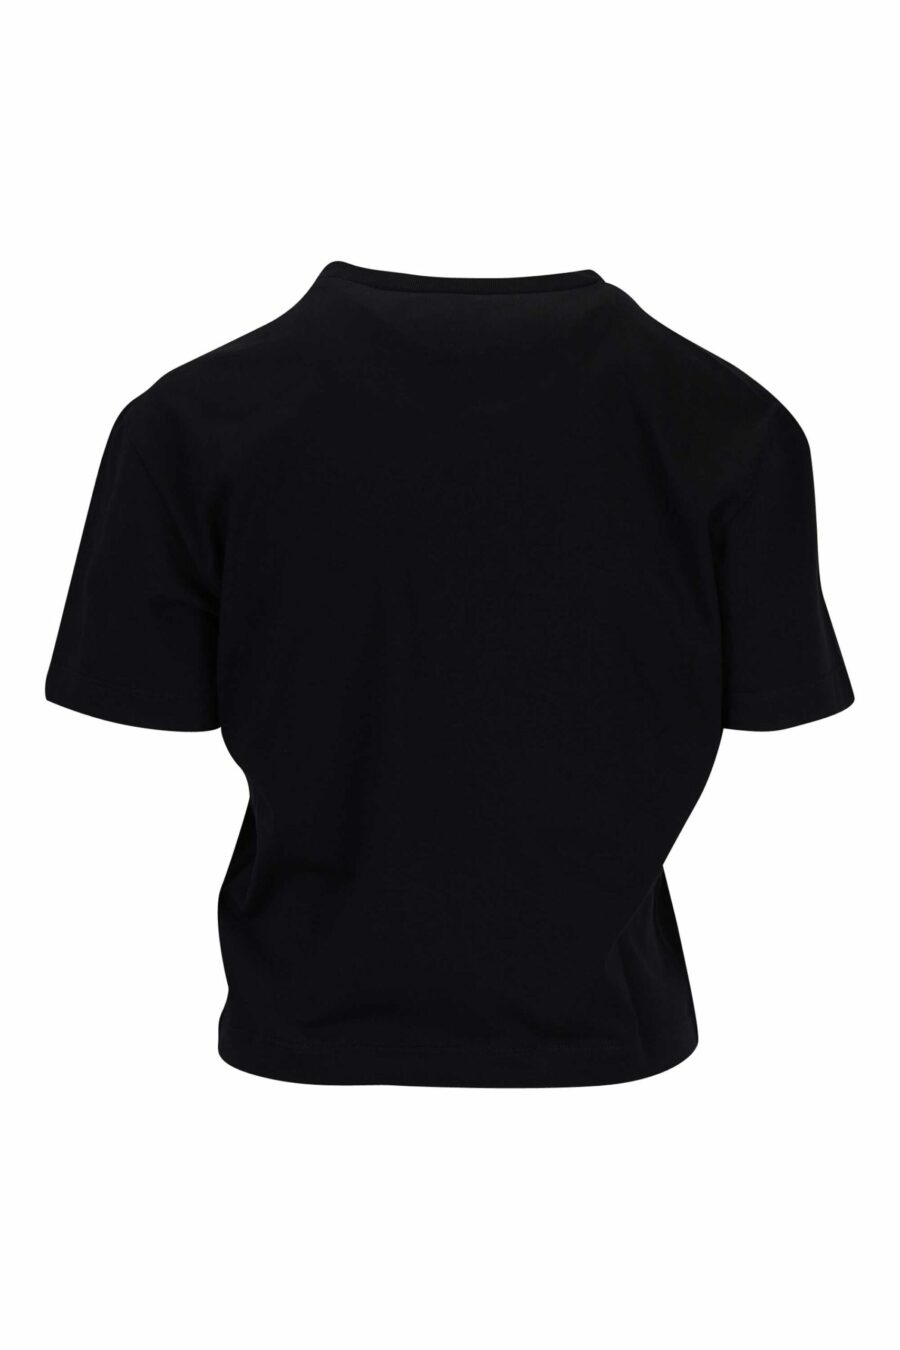 Camiseta negra con logo corazón transparente - 8054148332044 1 scaled